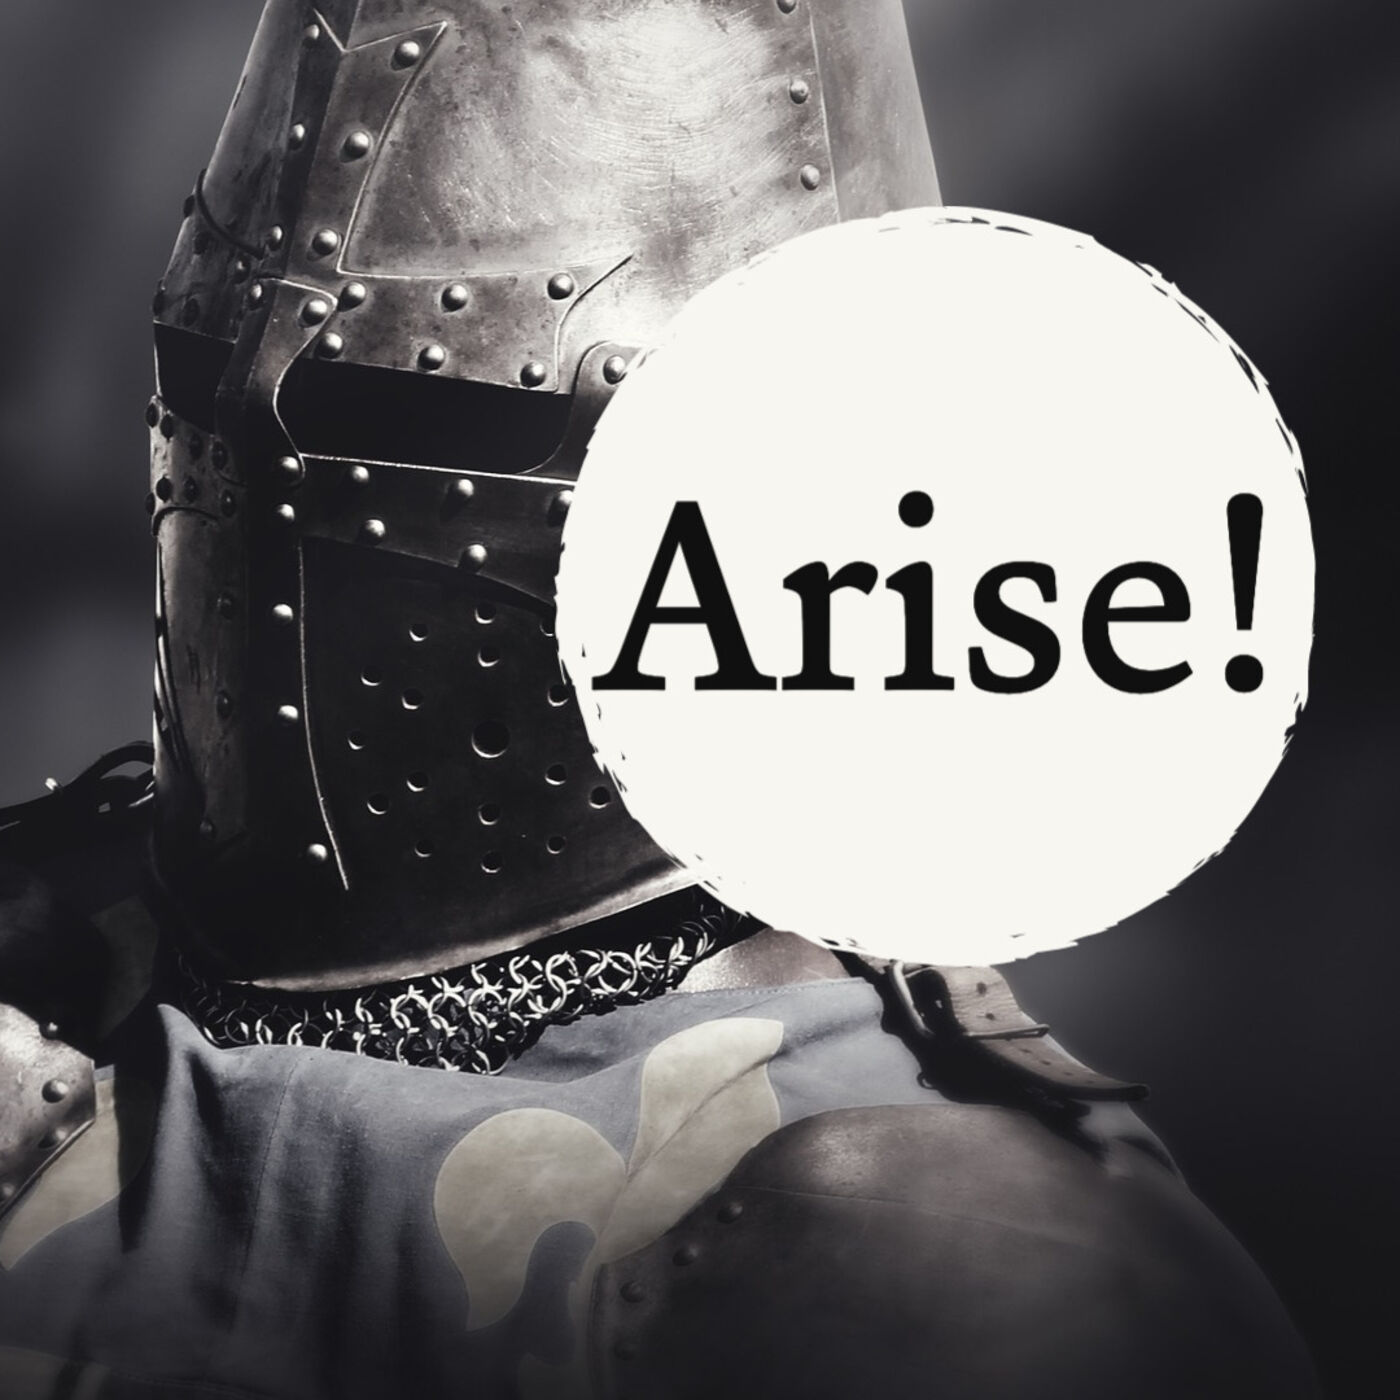 Arise!